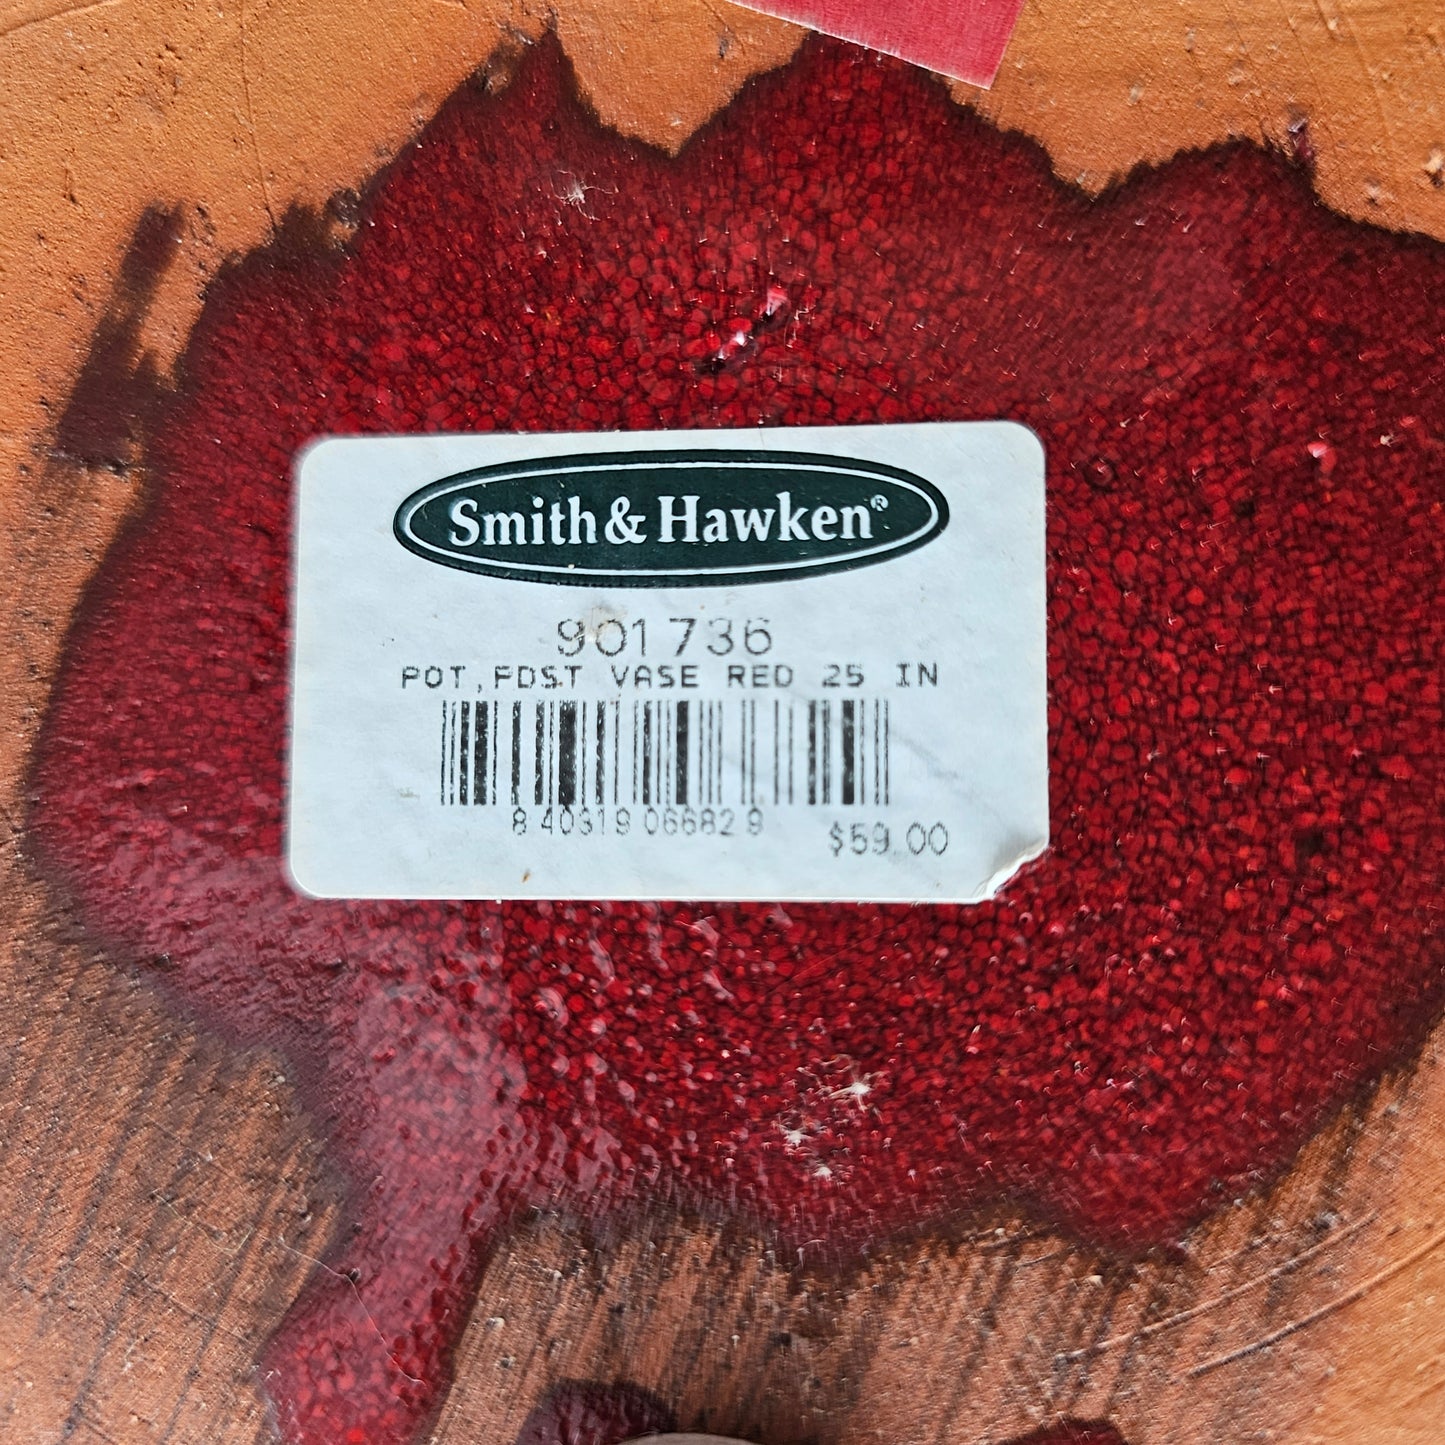 Smith & Hawkins Red Pedestal Planter Urn